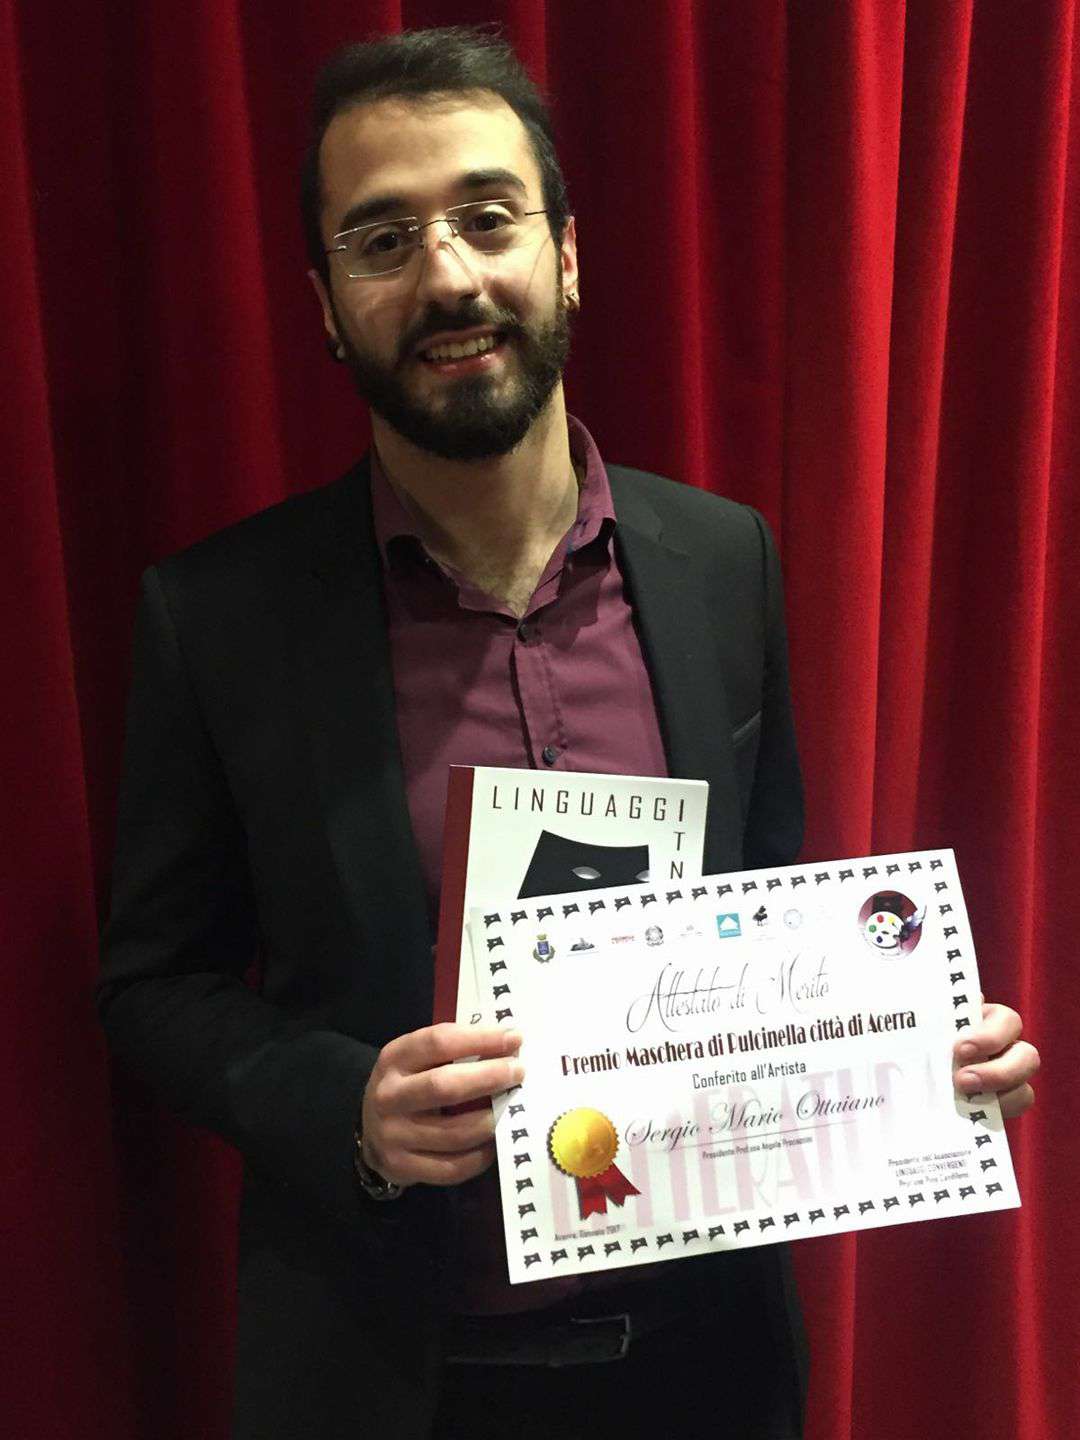 Sergio Mario Ottaiano arriva primo al Premio Maschera di Pulcinella – Città di Acerra, terza edizione.